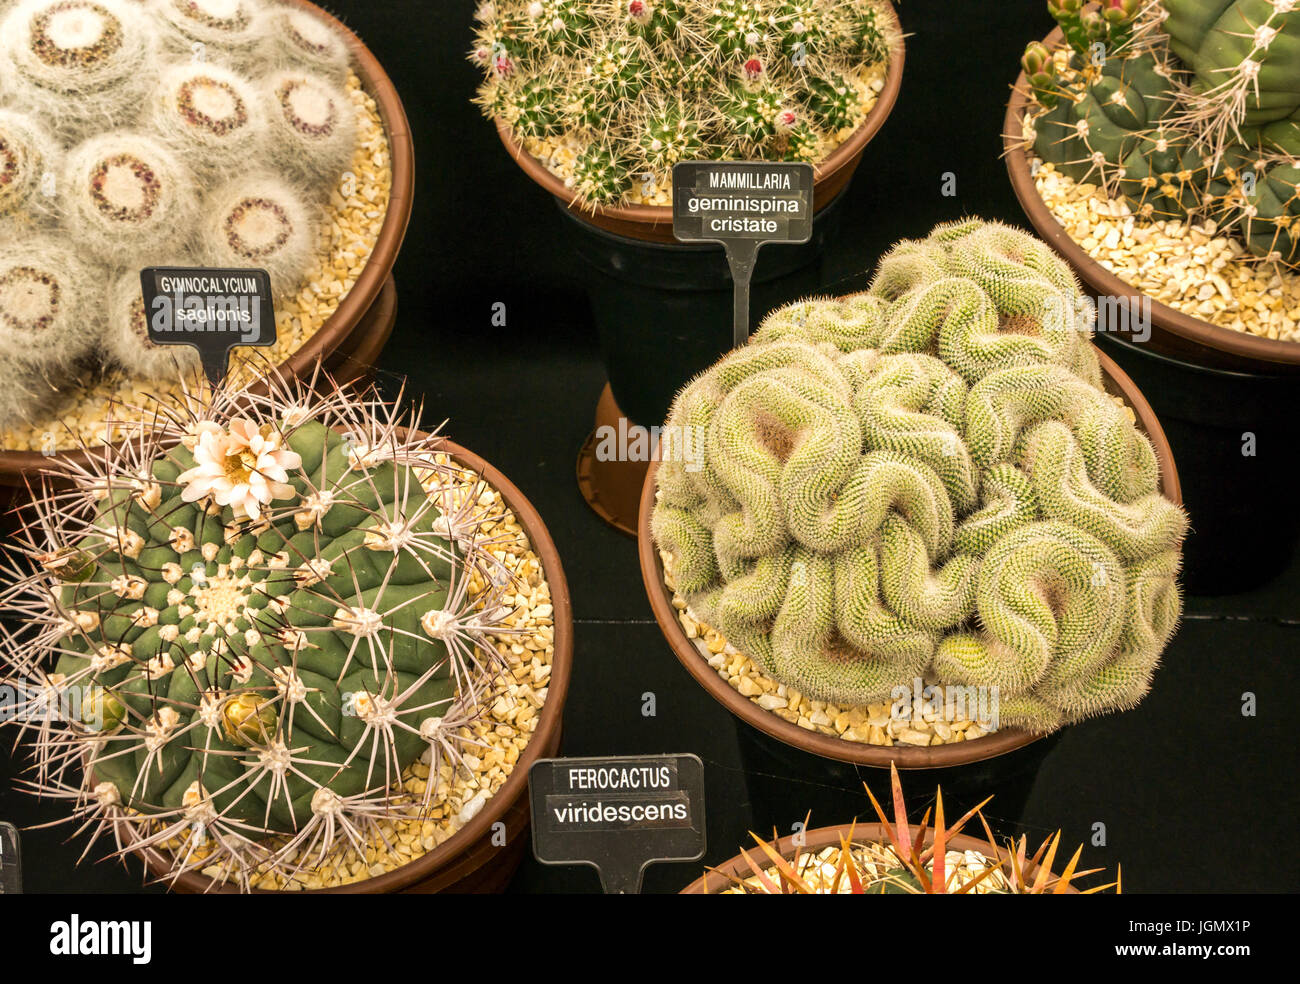 Mammillaria geminispina cristate Cactus und Gymnocalycium saglionis Kaktus Display, RHS Flower Show, UK Stockfoto